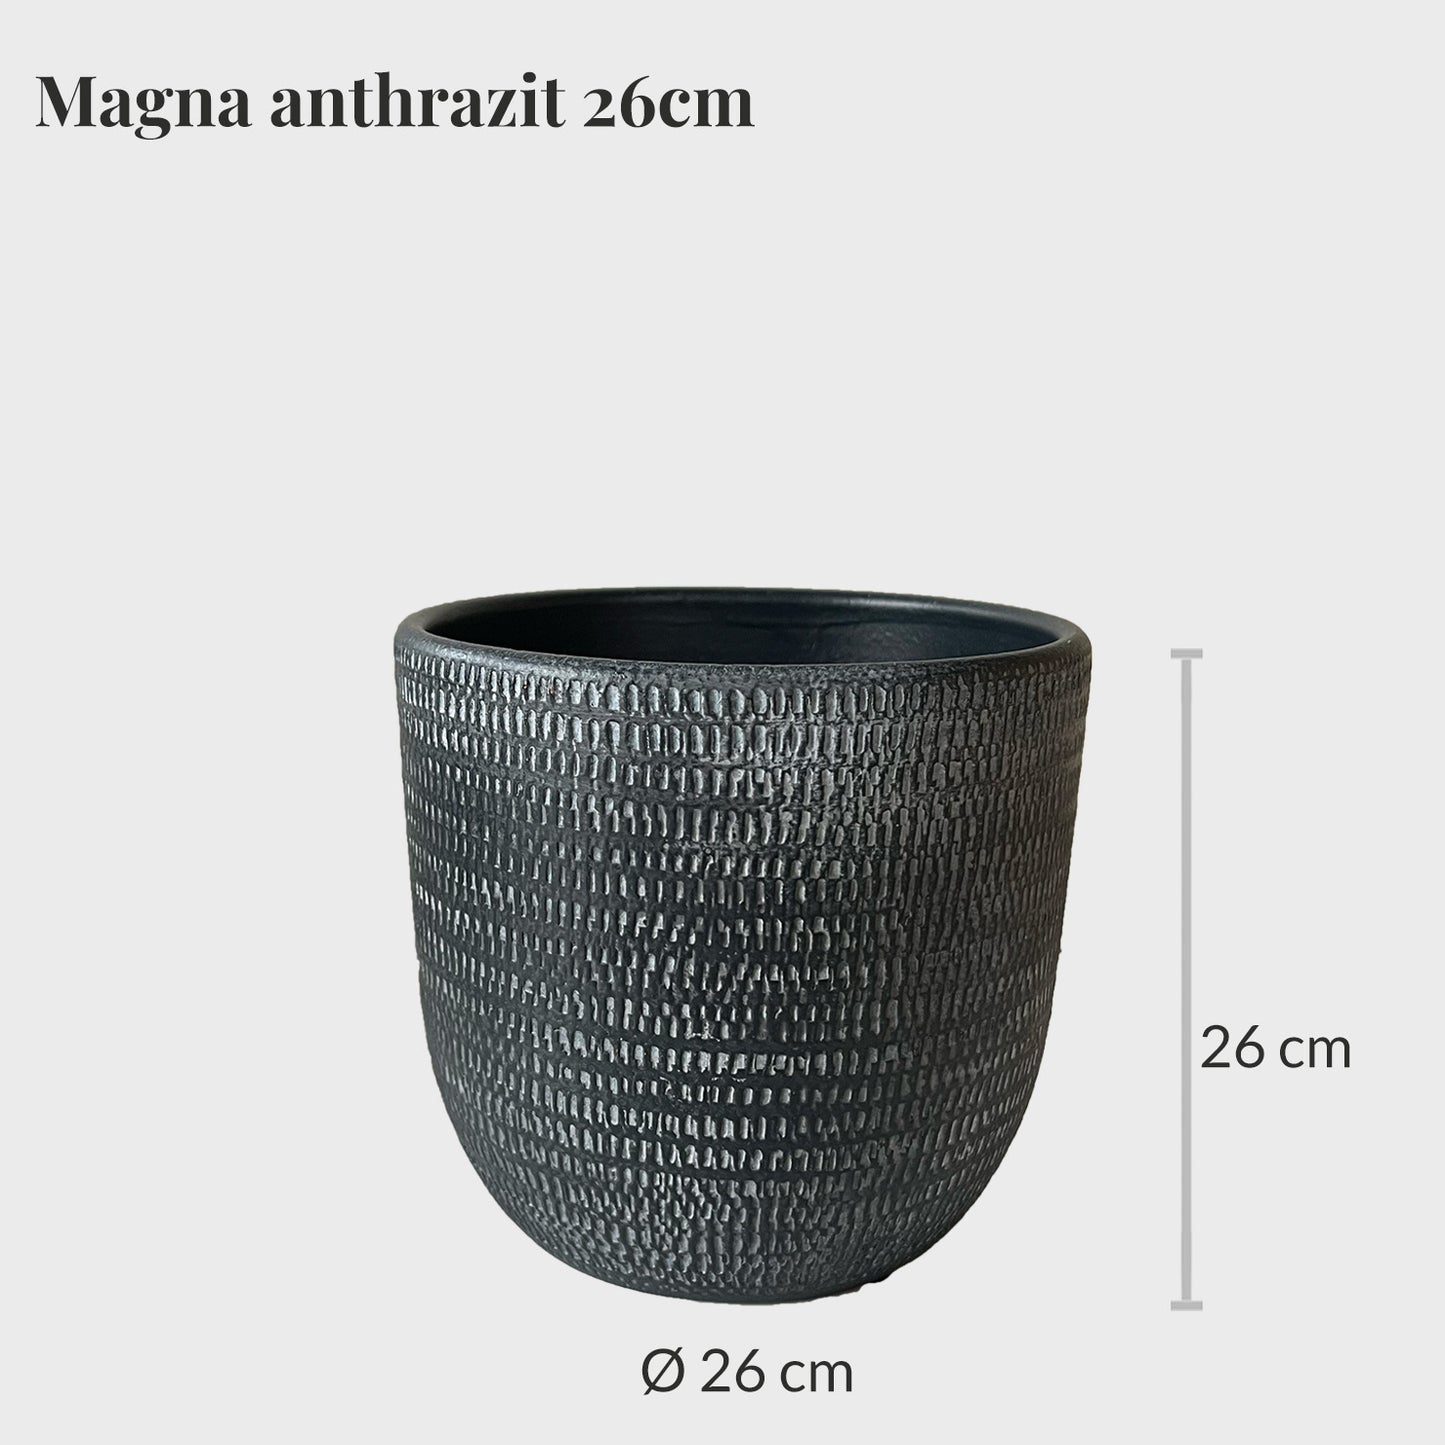 Magna 26cm